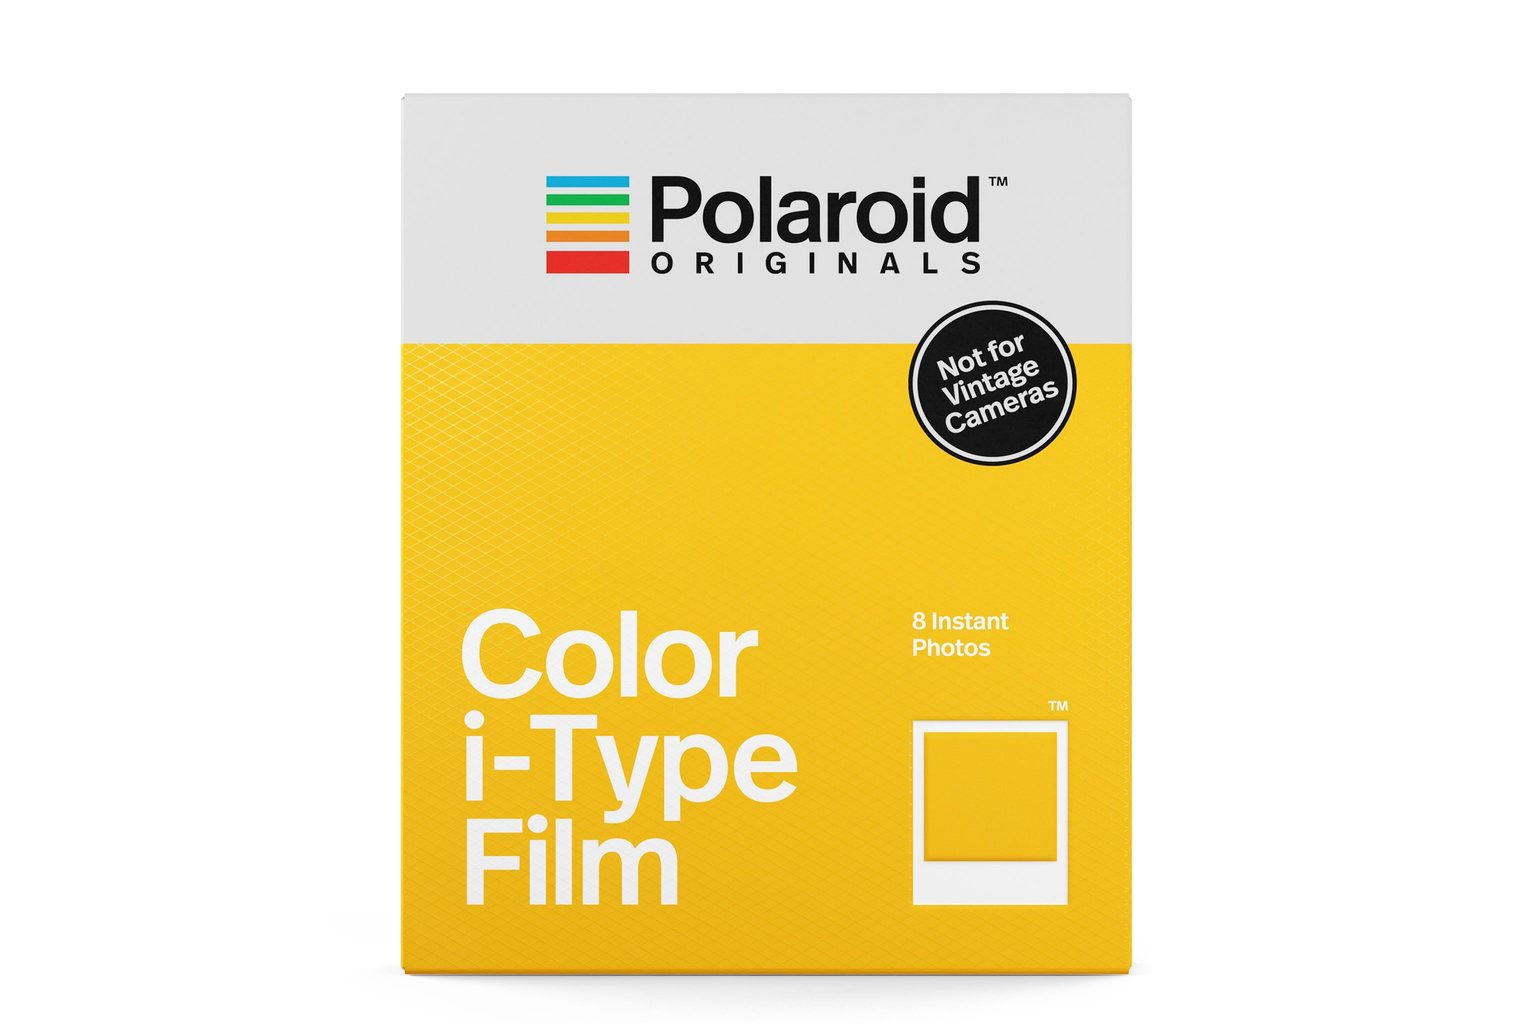 polaroid-originals-color-instant-film-for-itype